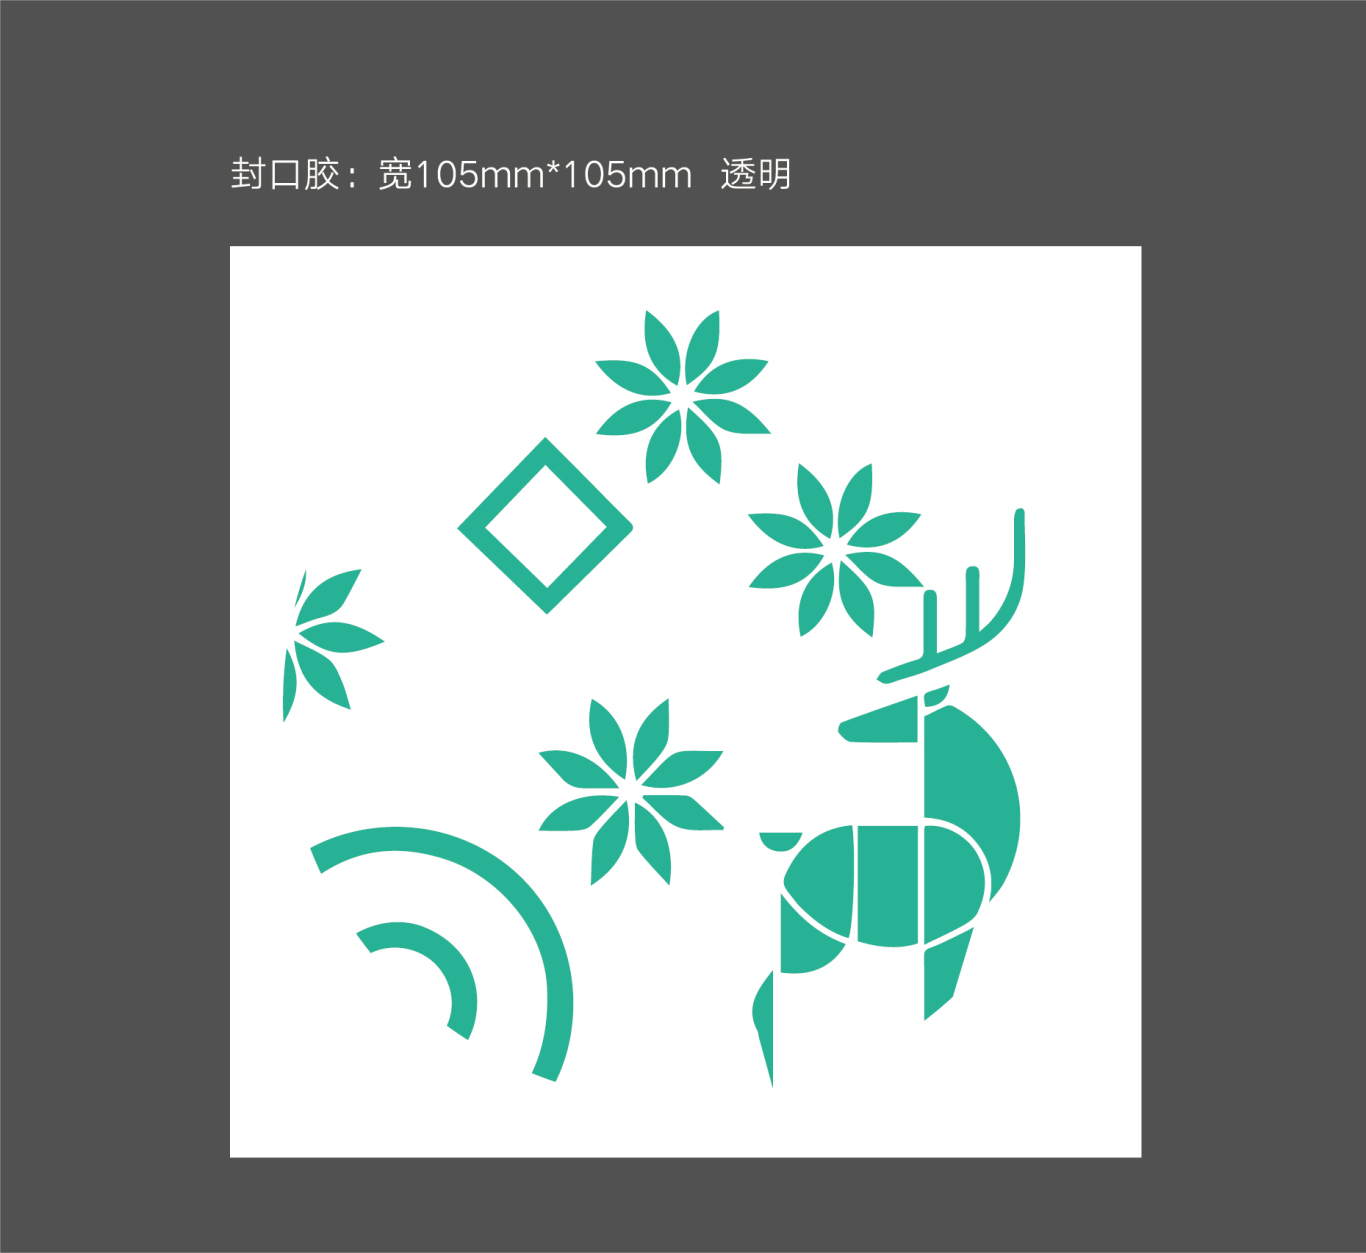 清舞飄雪茶飲 logo設計及吉祥物設計圖15